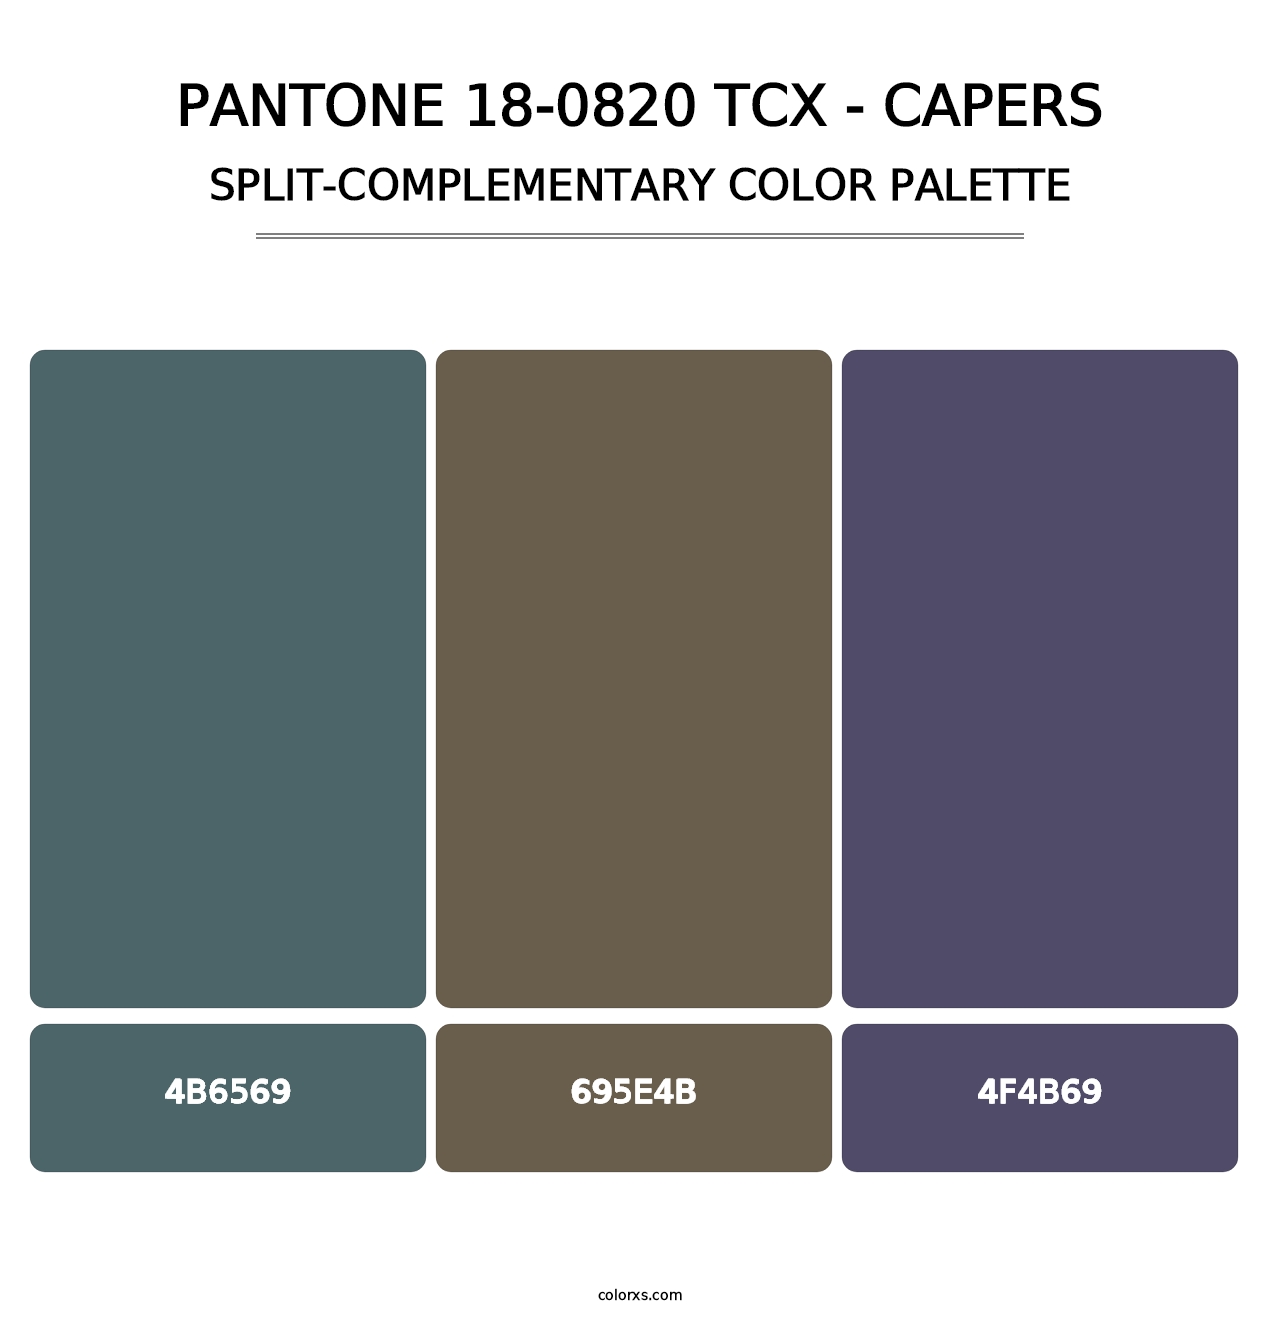 PANTONE 18-0820 TCX - Capers - Split-Complementary Color Palette